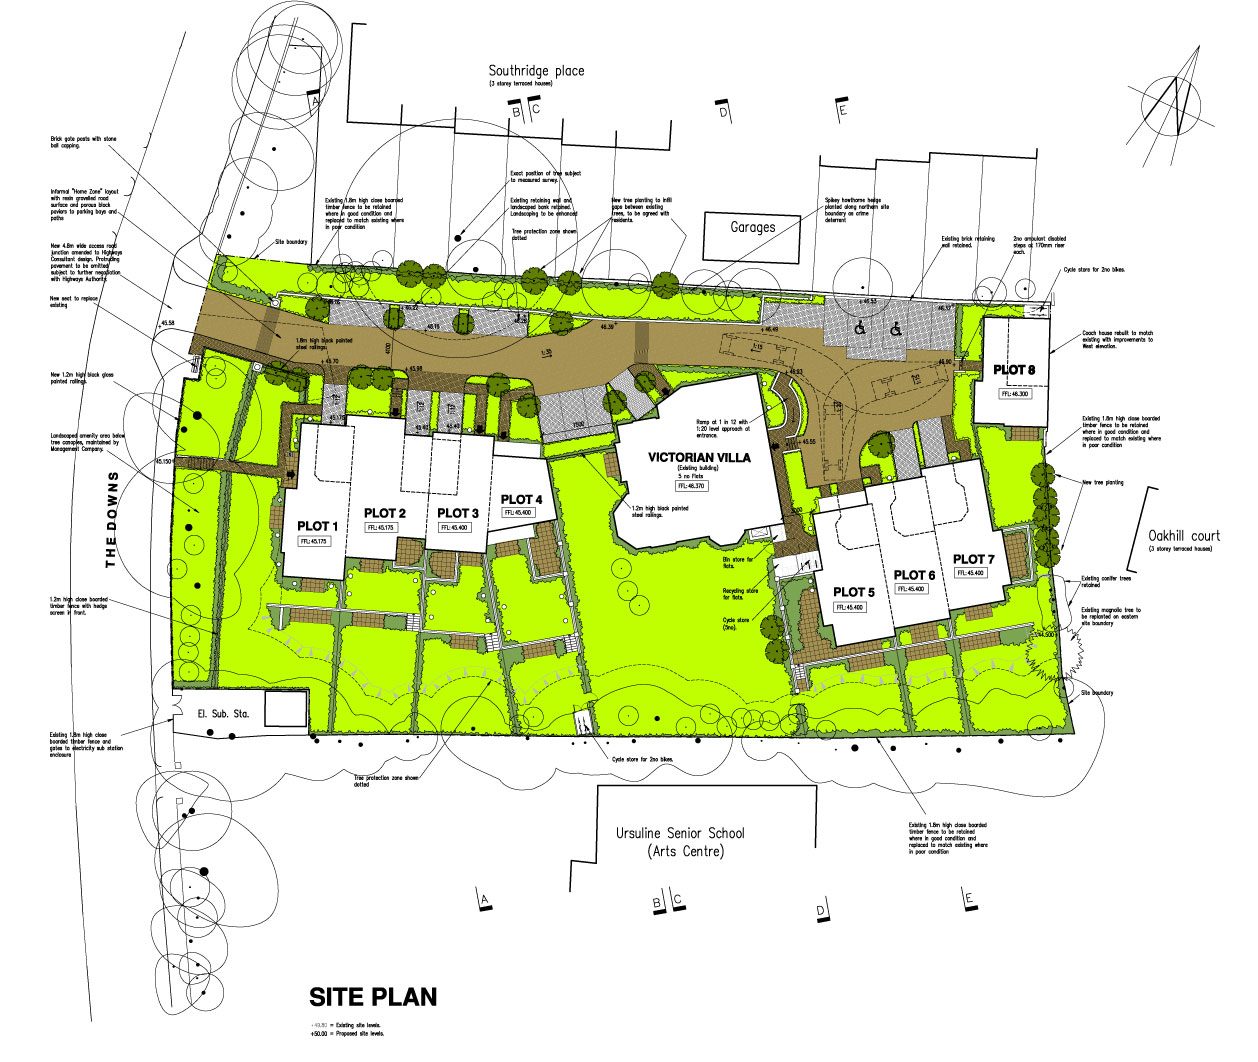 Wimbledon Housing Plans by KHA Architects.